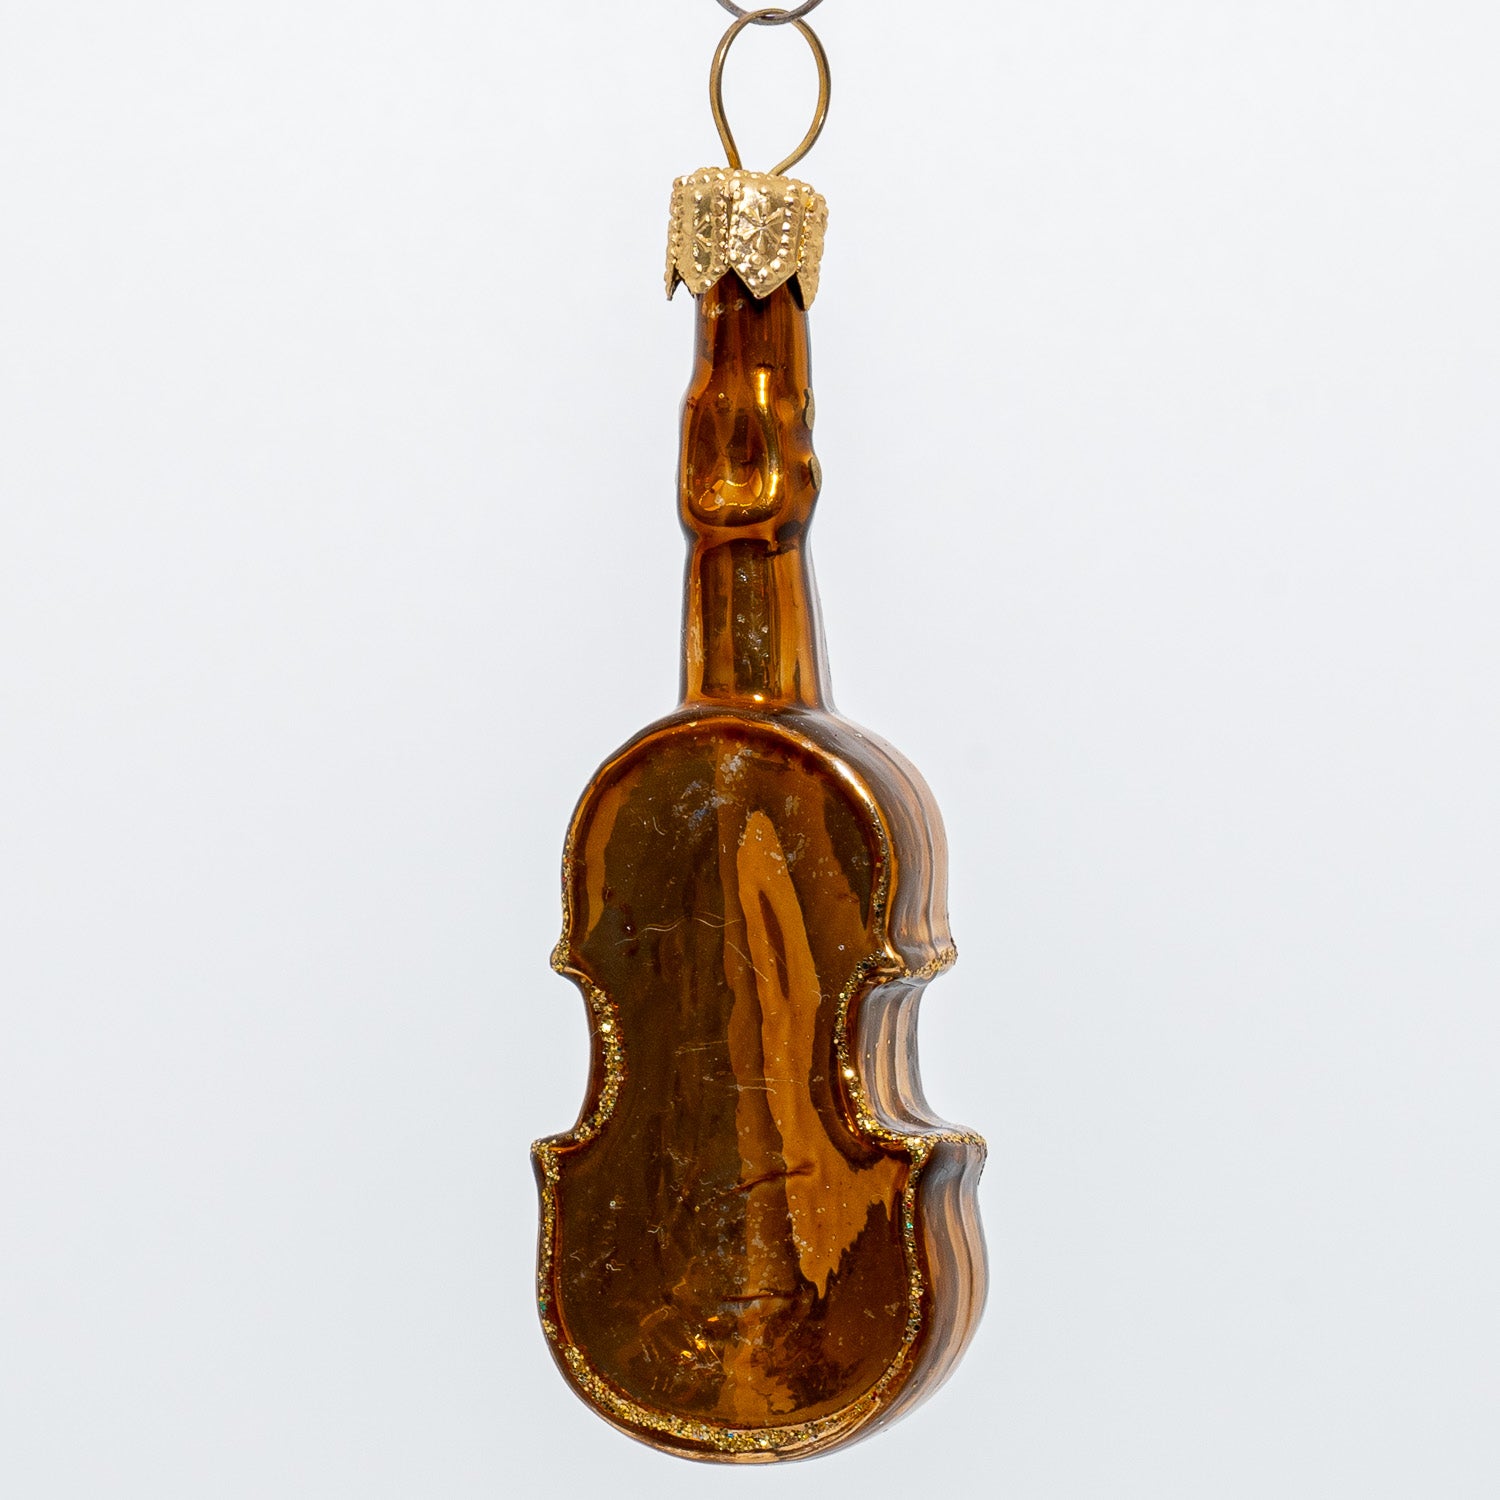 Lille violin